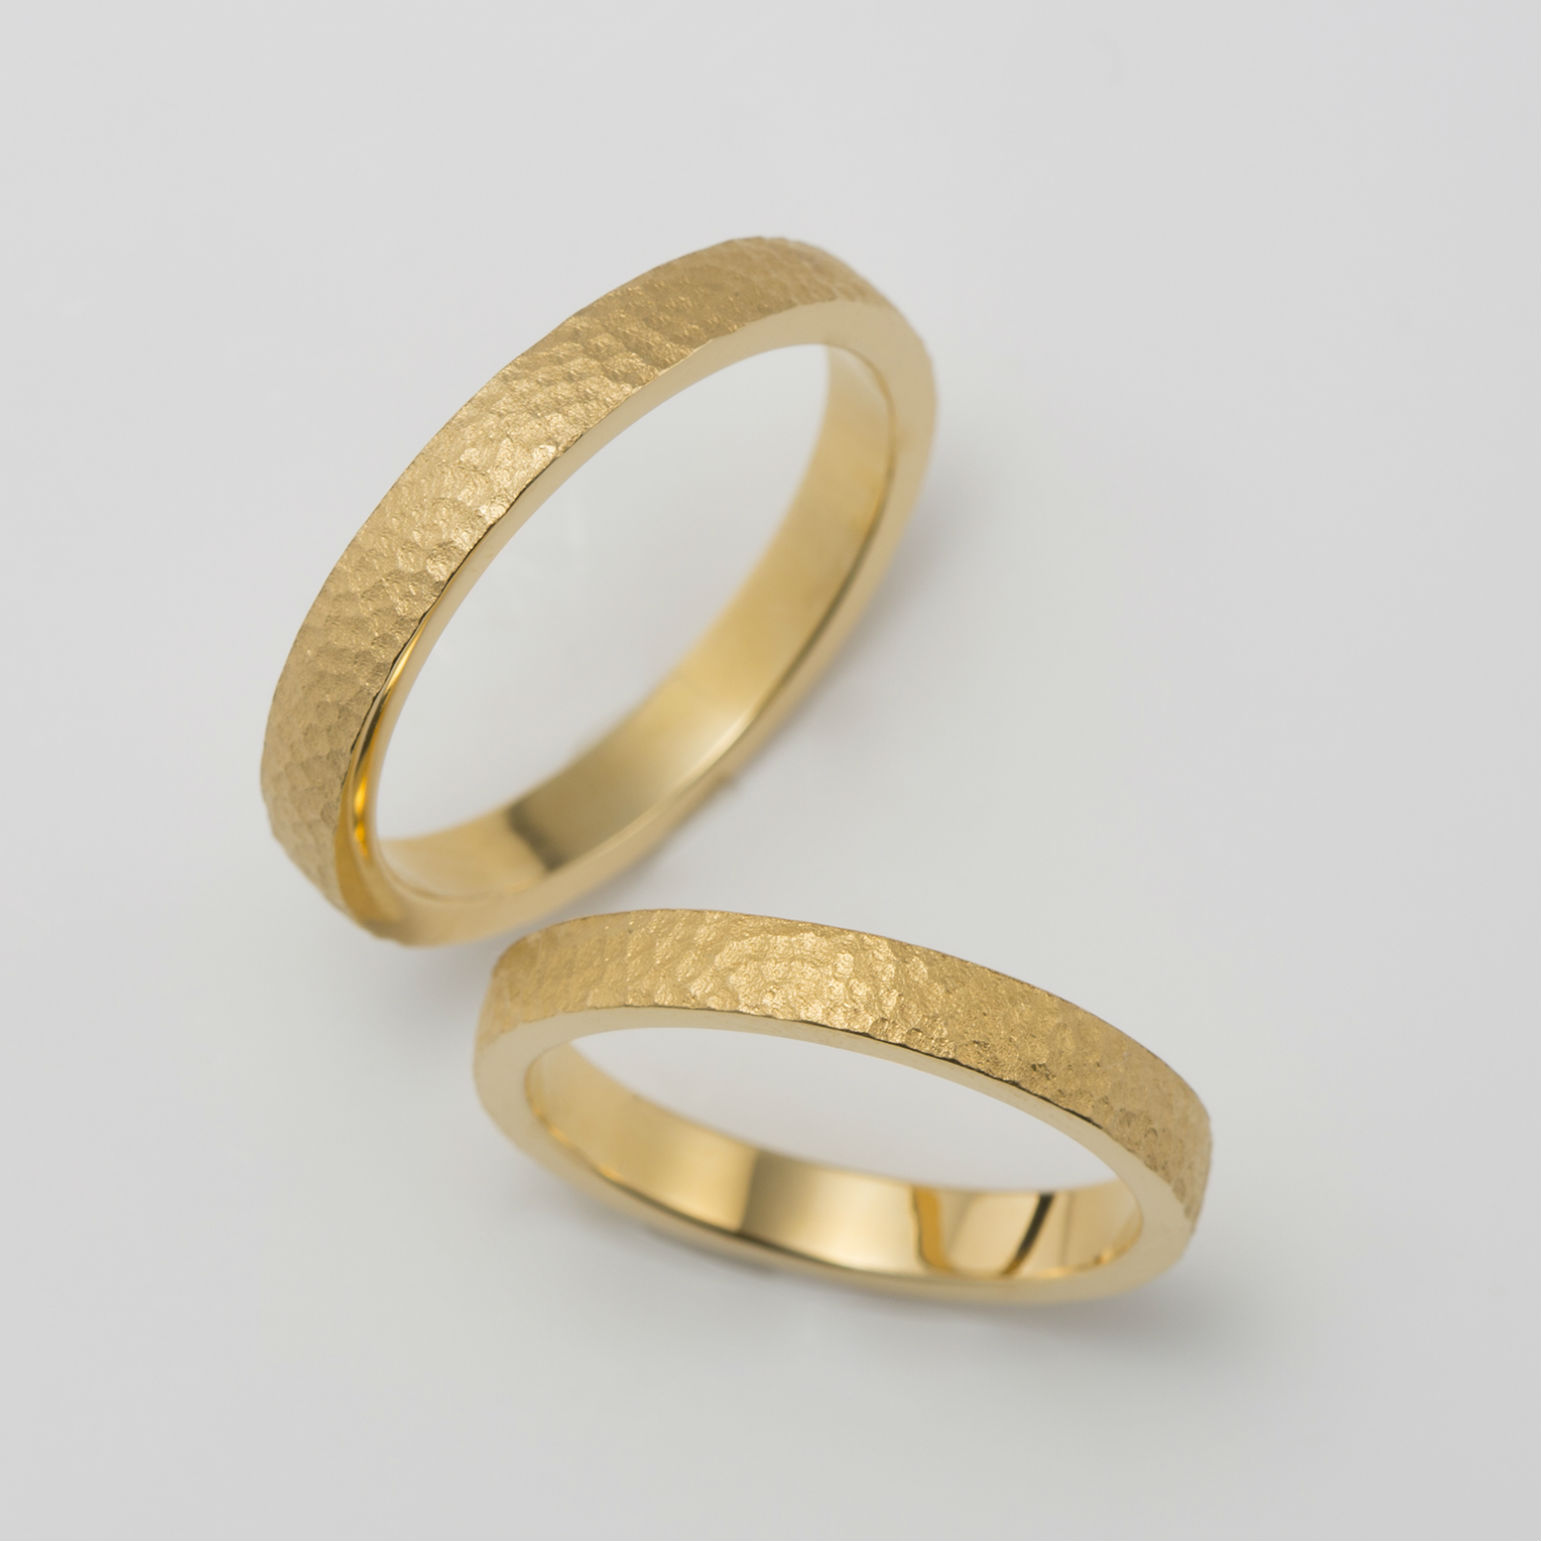 鎚目模様を施したイエローゴールドの結婚指輪